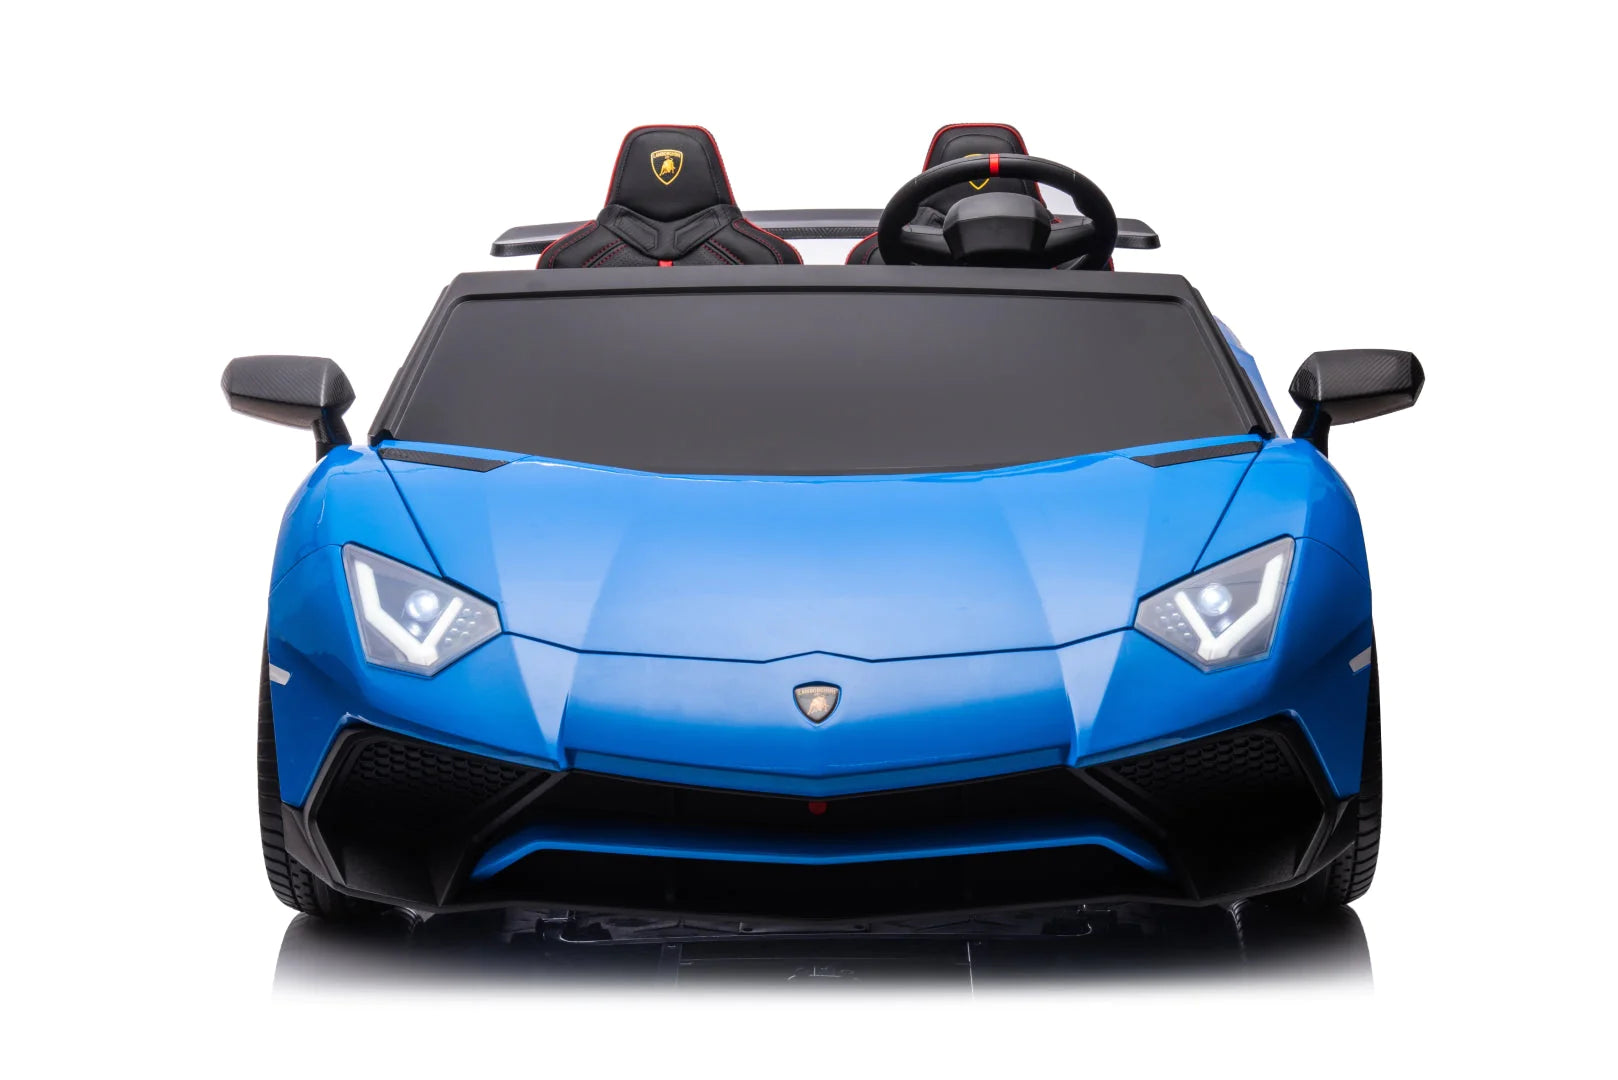 2023 Lamborghini Aventador Car | 2 Seater > 24V (2x2) | Electric Riding Vehicle for Kids